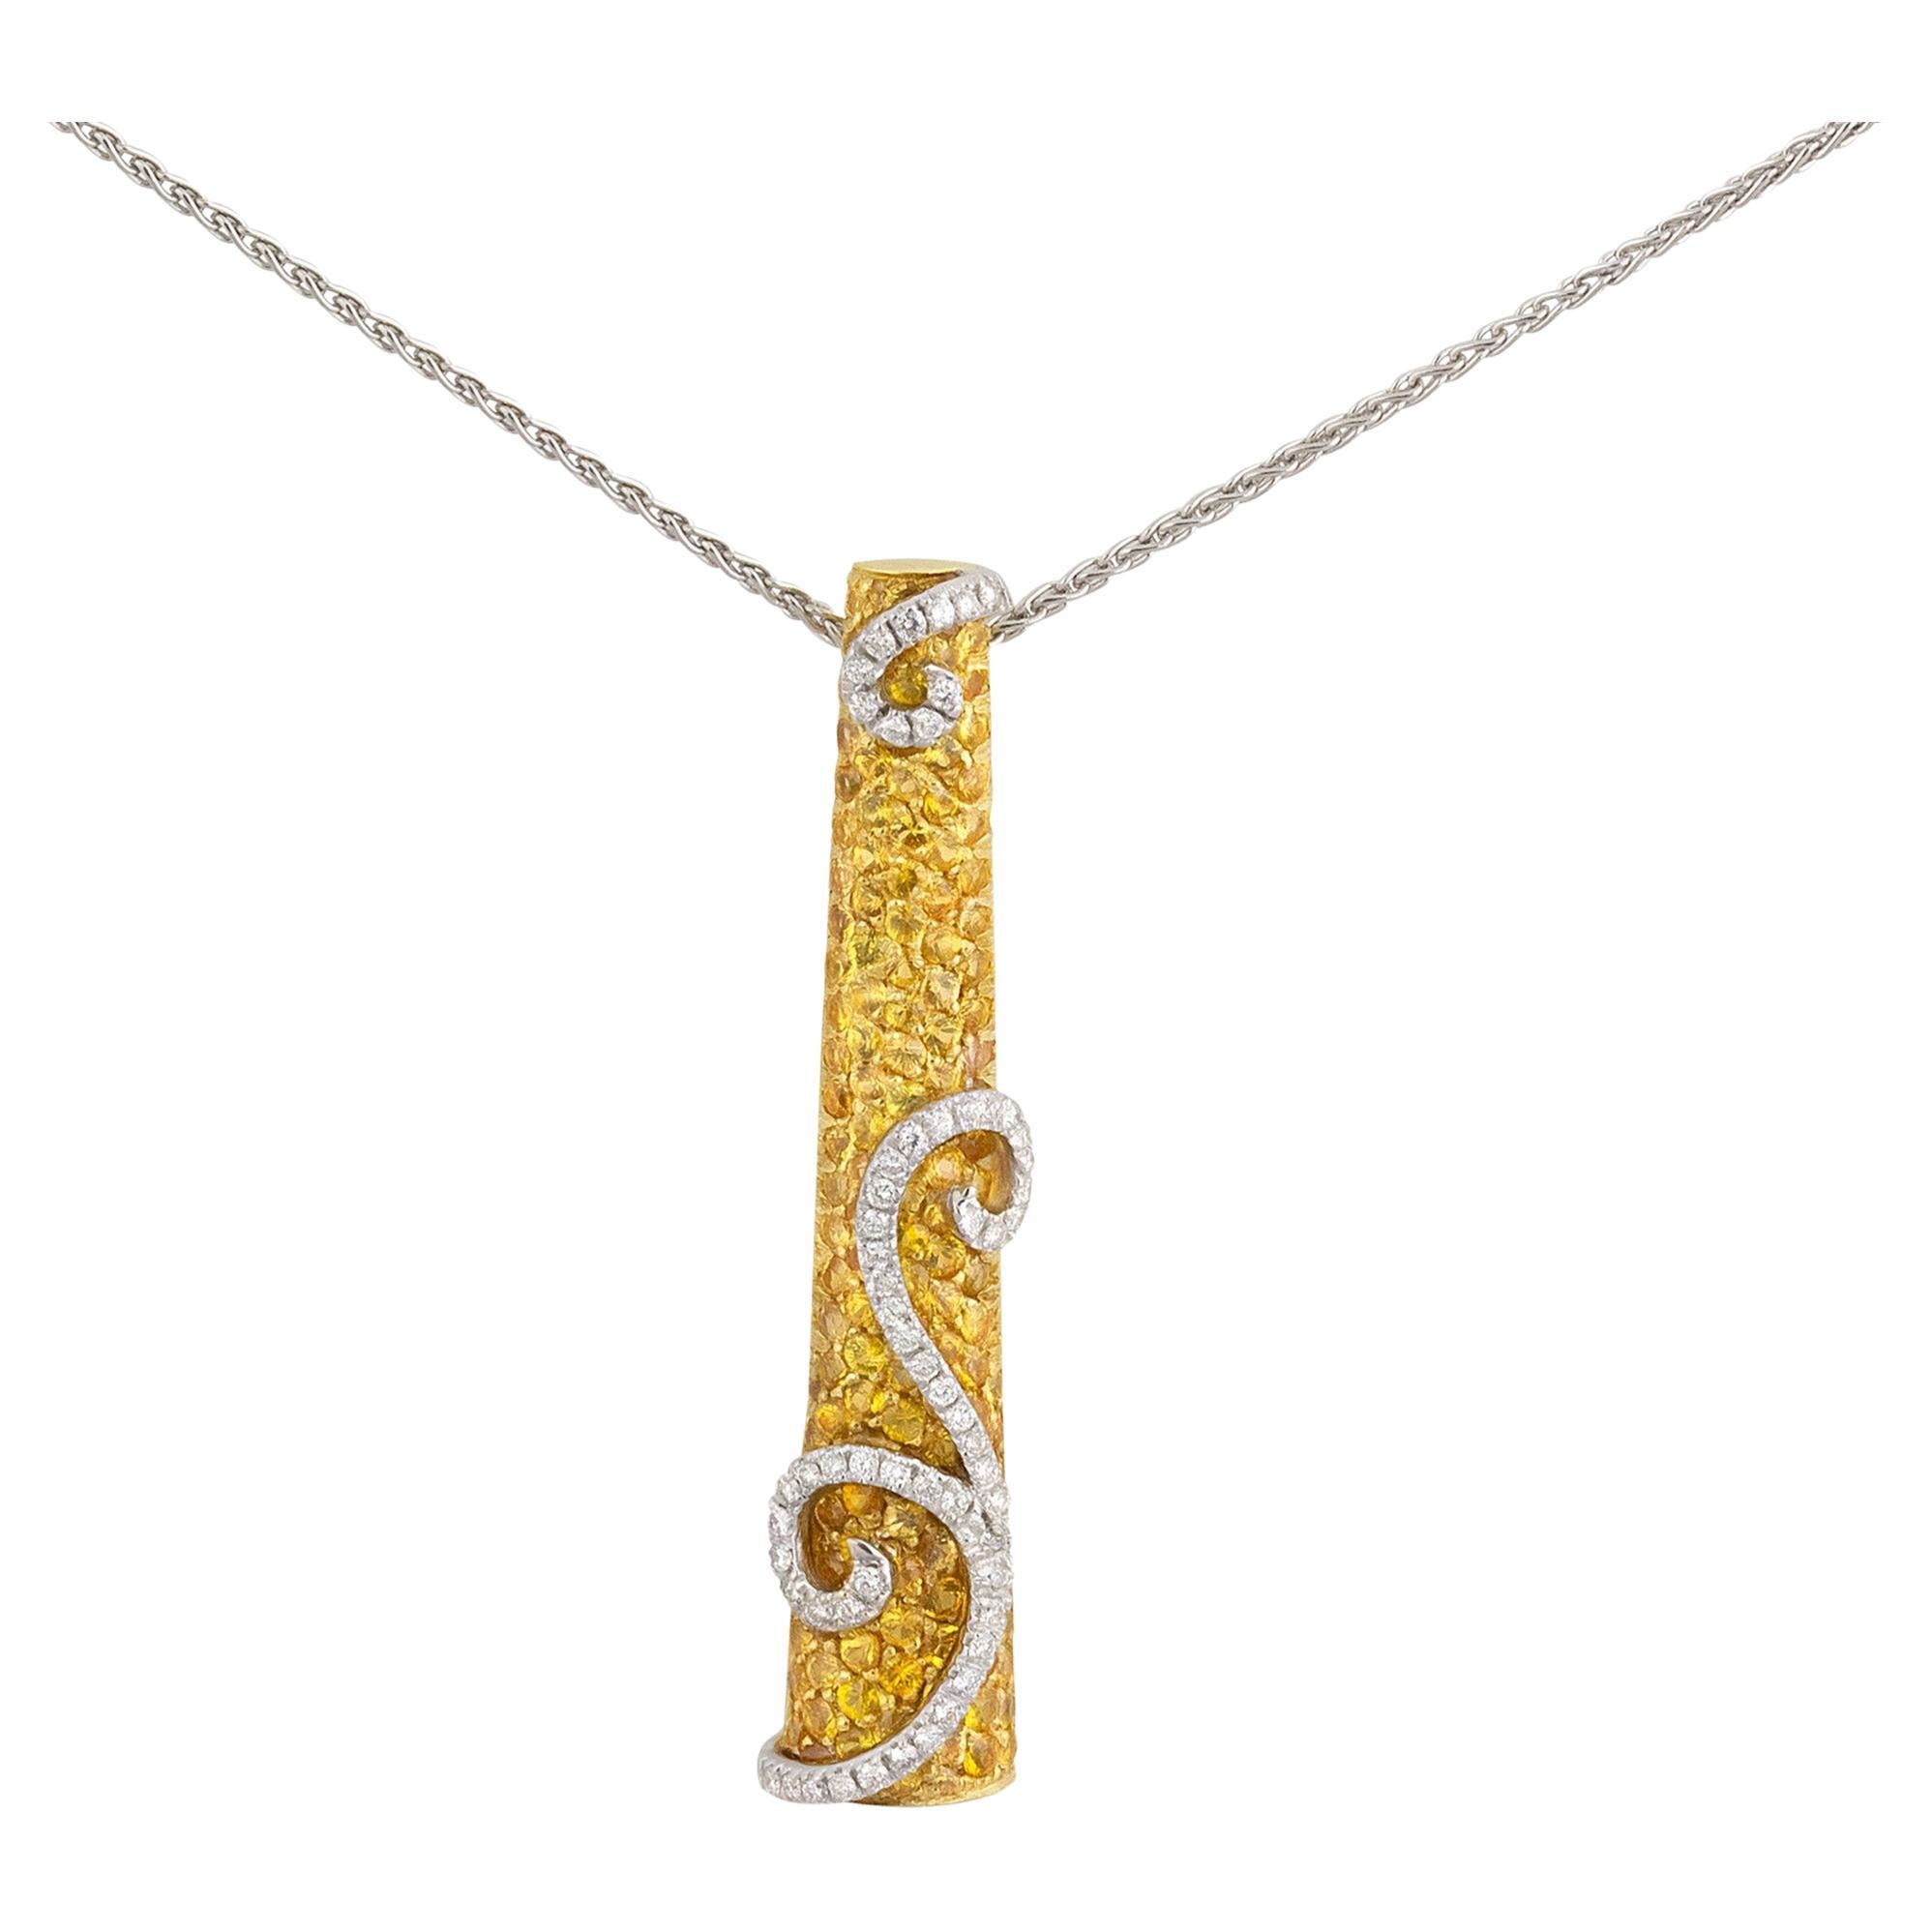 Stefan Hafner, collier pendentif en or jaune et blanc 18 carats avec diamants et saphirs